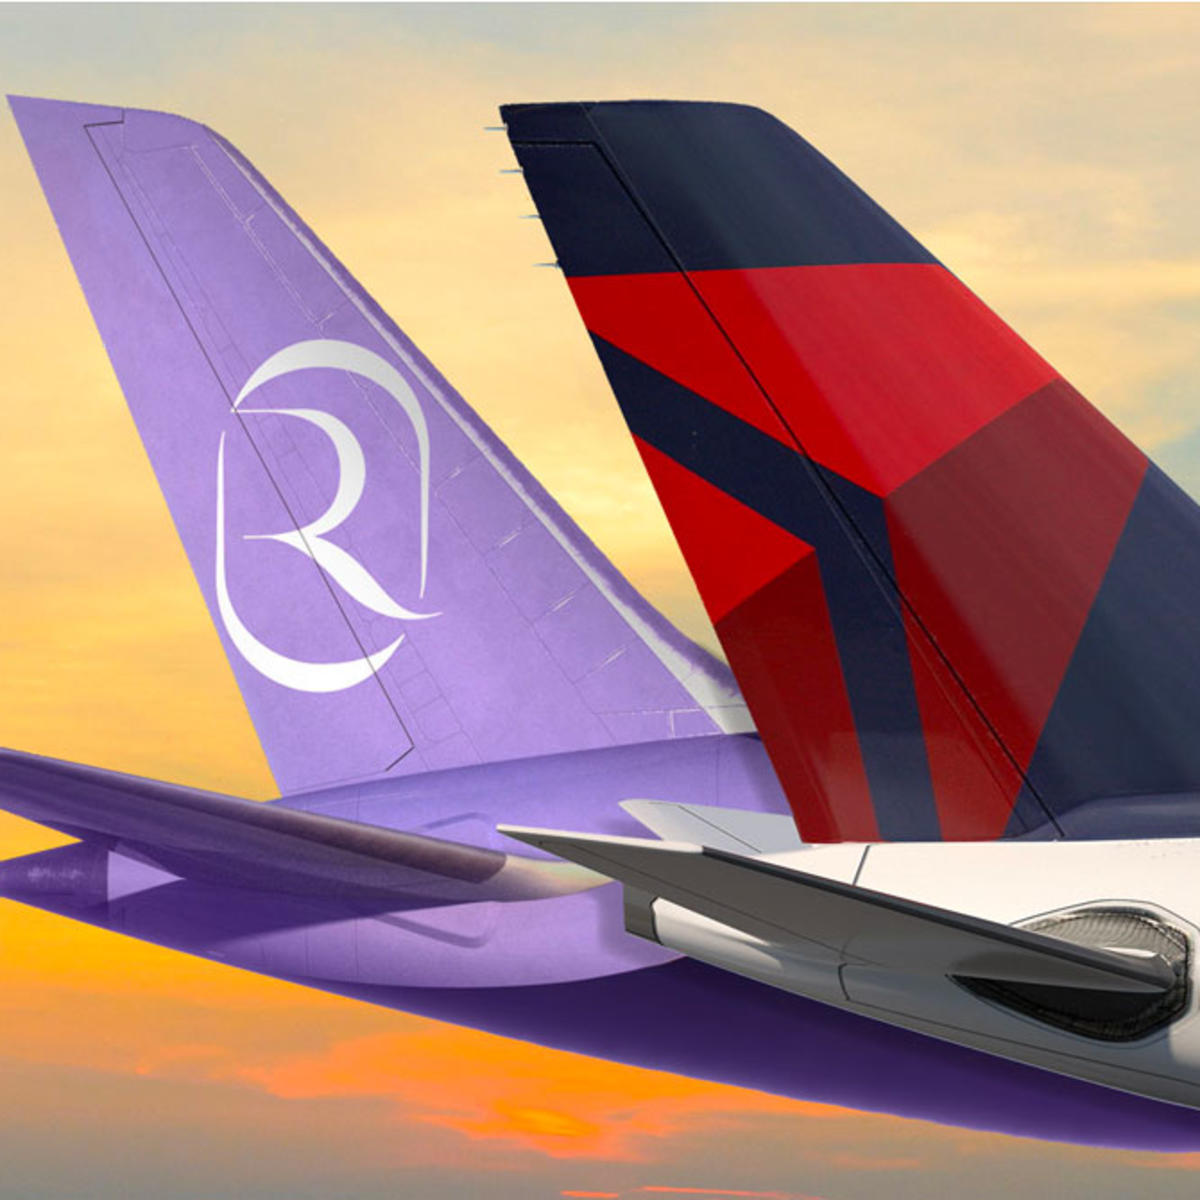 Delta Air Lines and Riyadh Air plane tails.